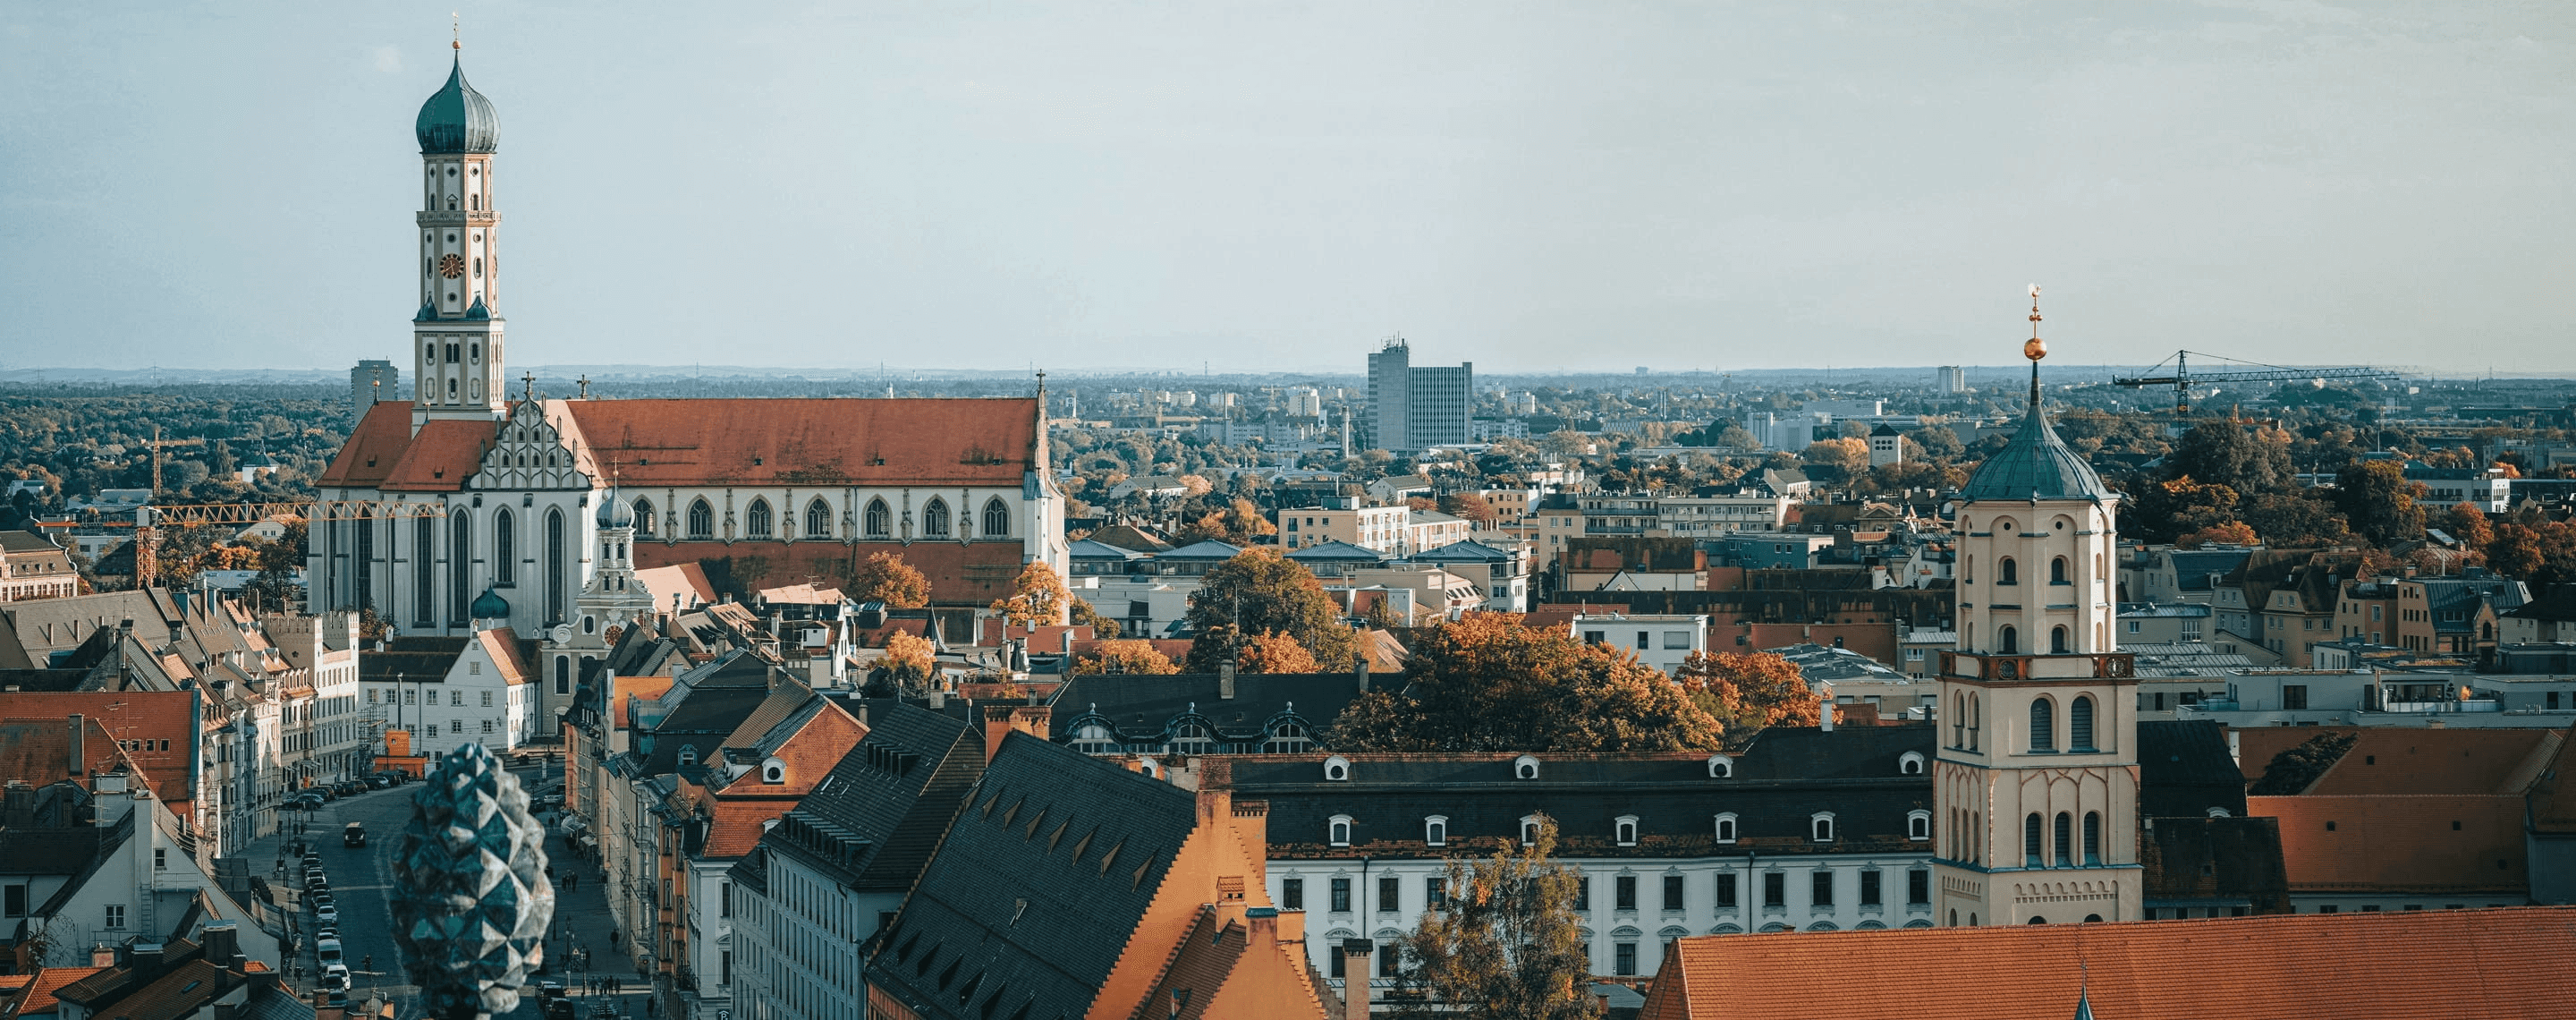 Stadtansicht von Augsburg